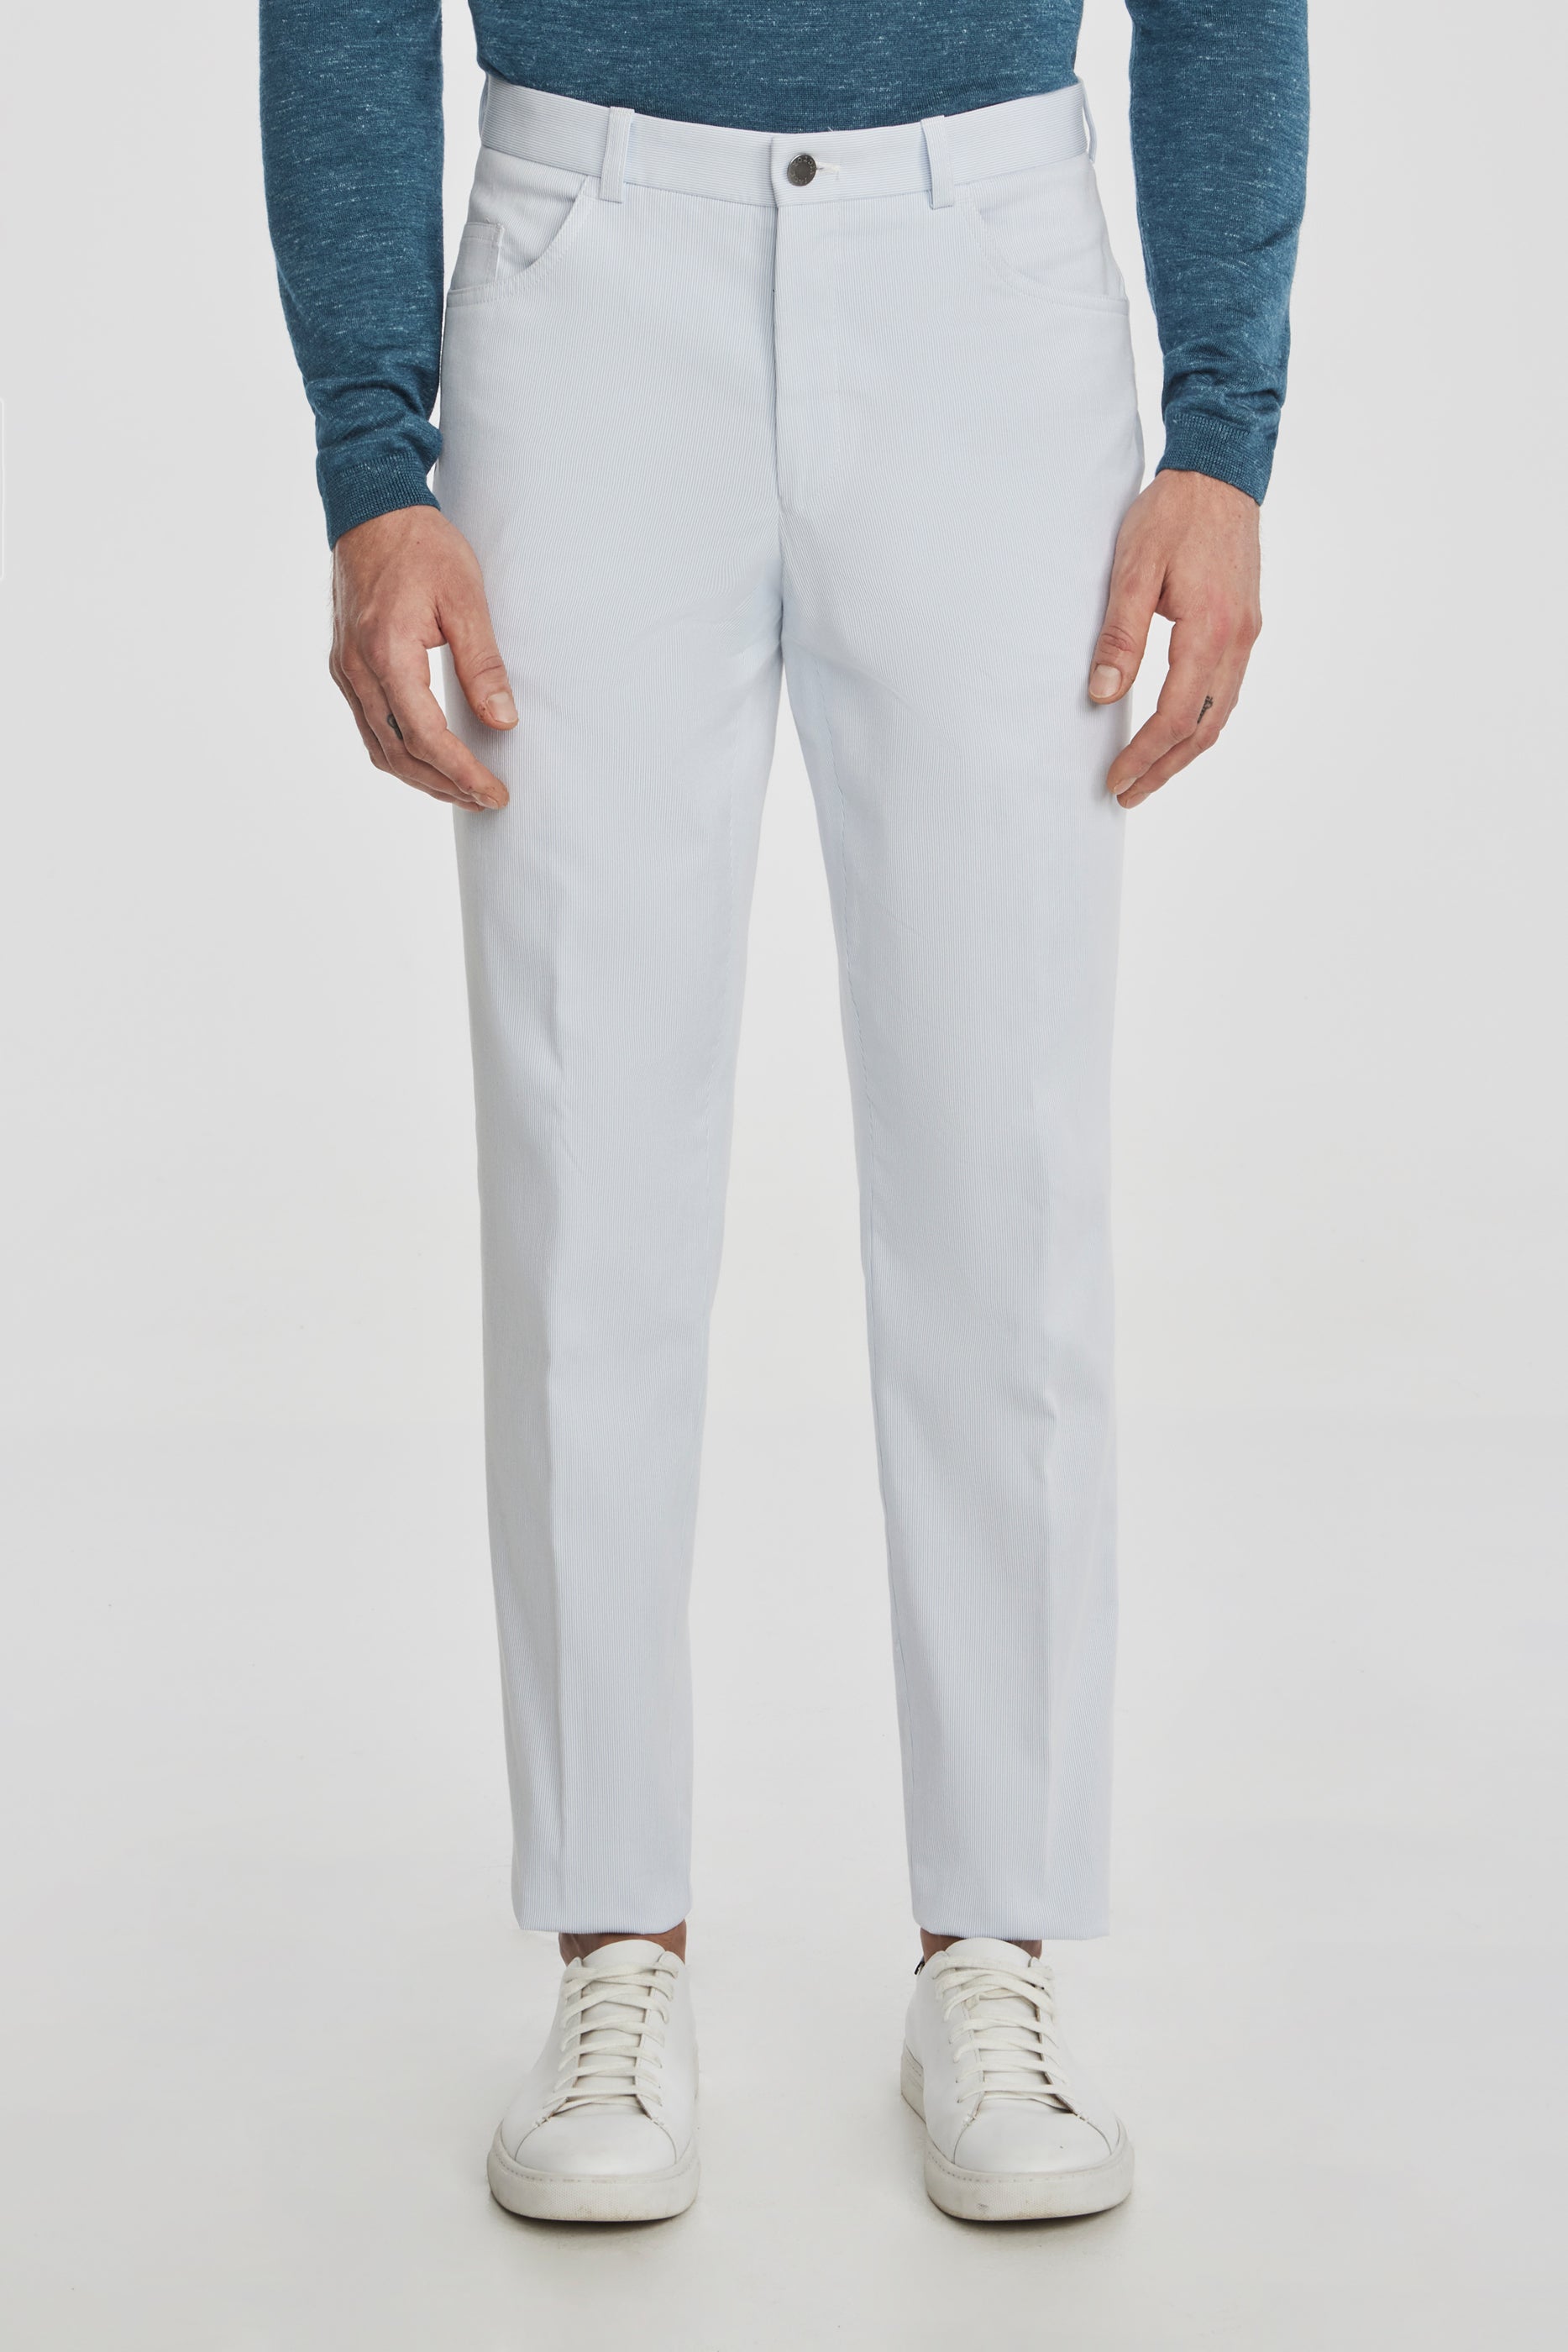 Vue alternative Pantalon bleu clair en plumes d'épingle en coton extensible 5 poches Sage